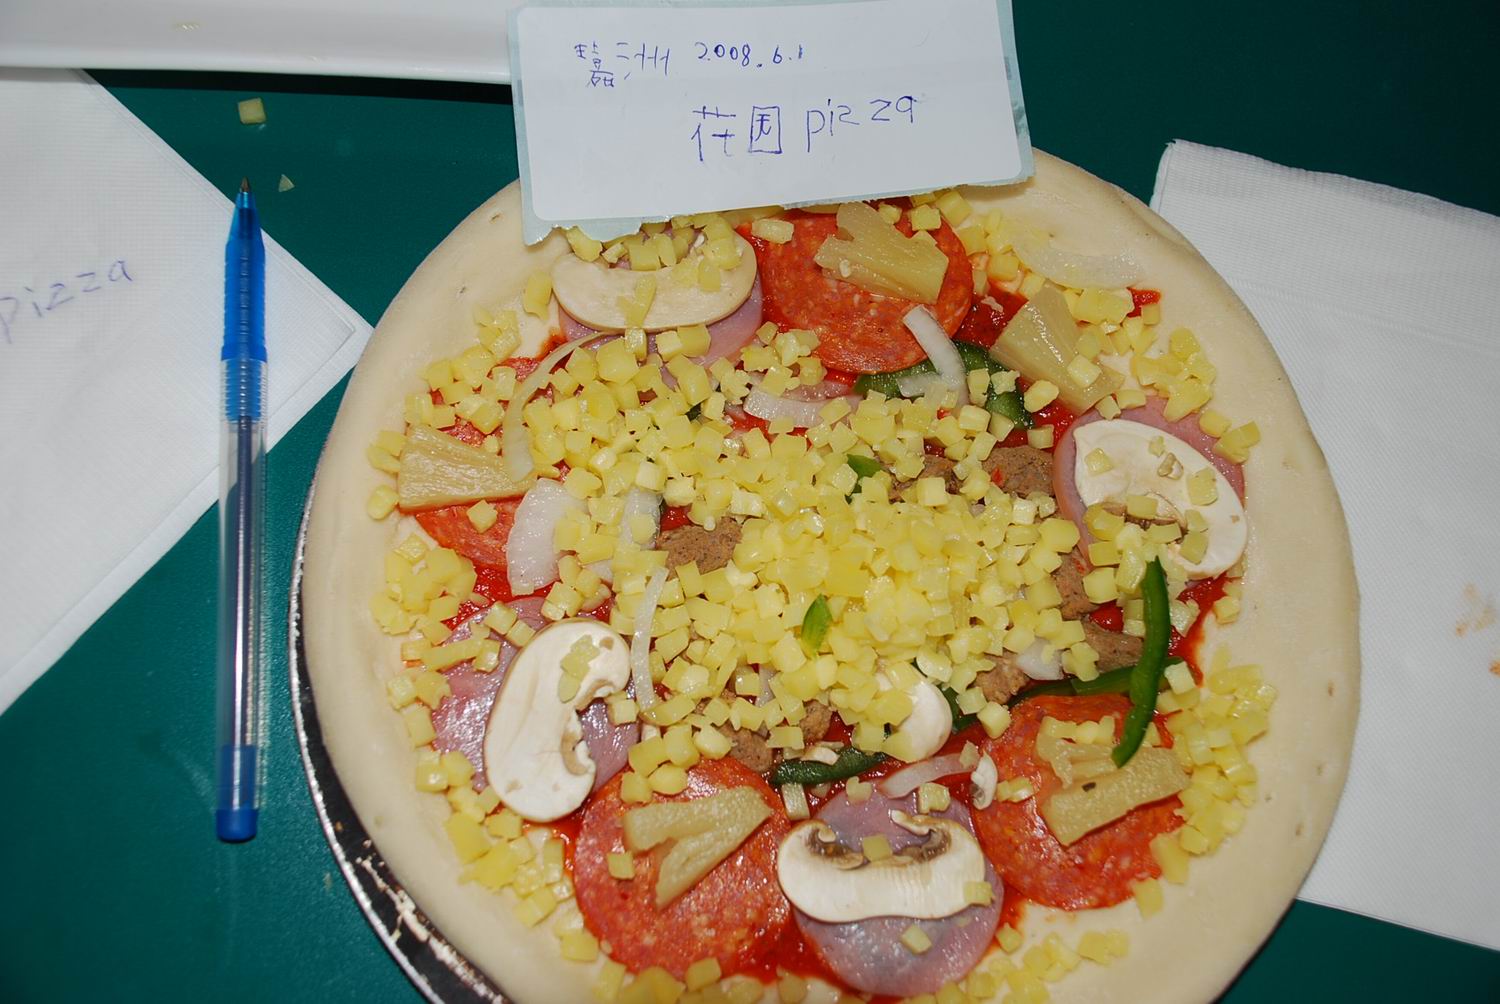 嘉洲的花园pizza.jpg